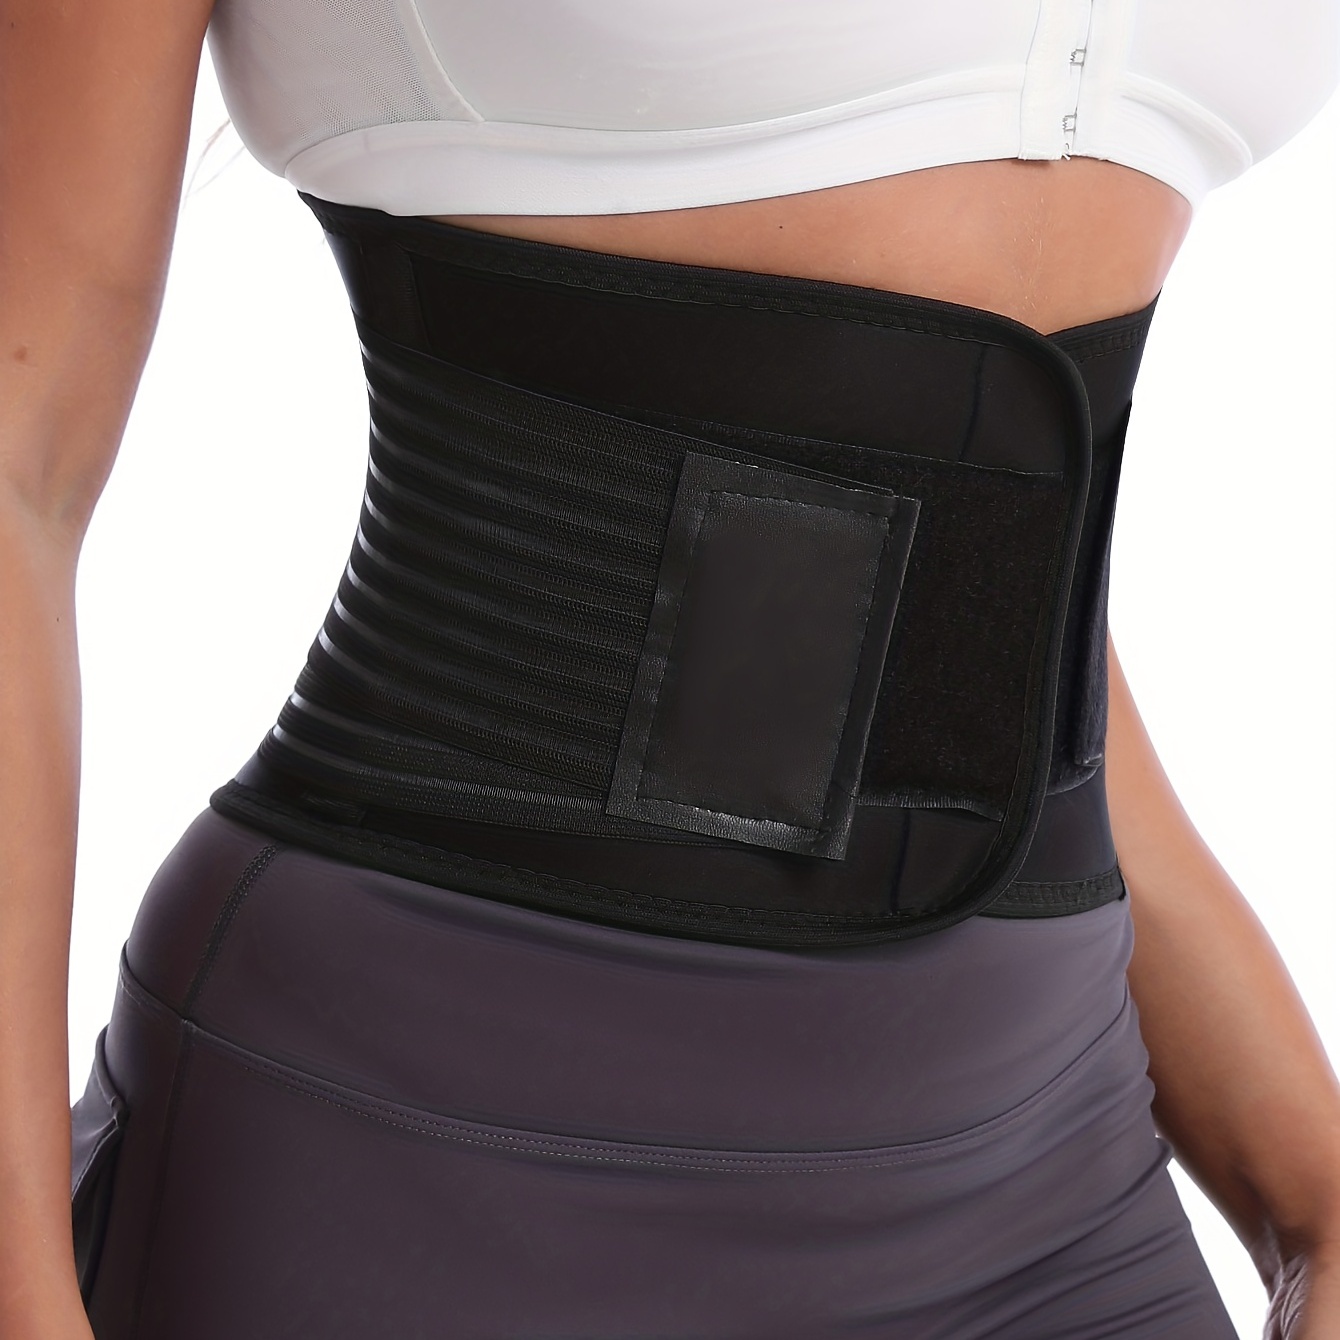 Shape Waist Get Fit Women's Corsets Waist Training Belt Body